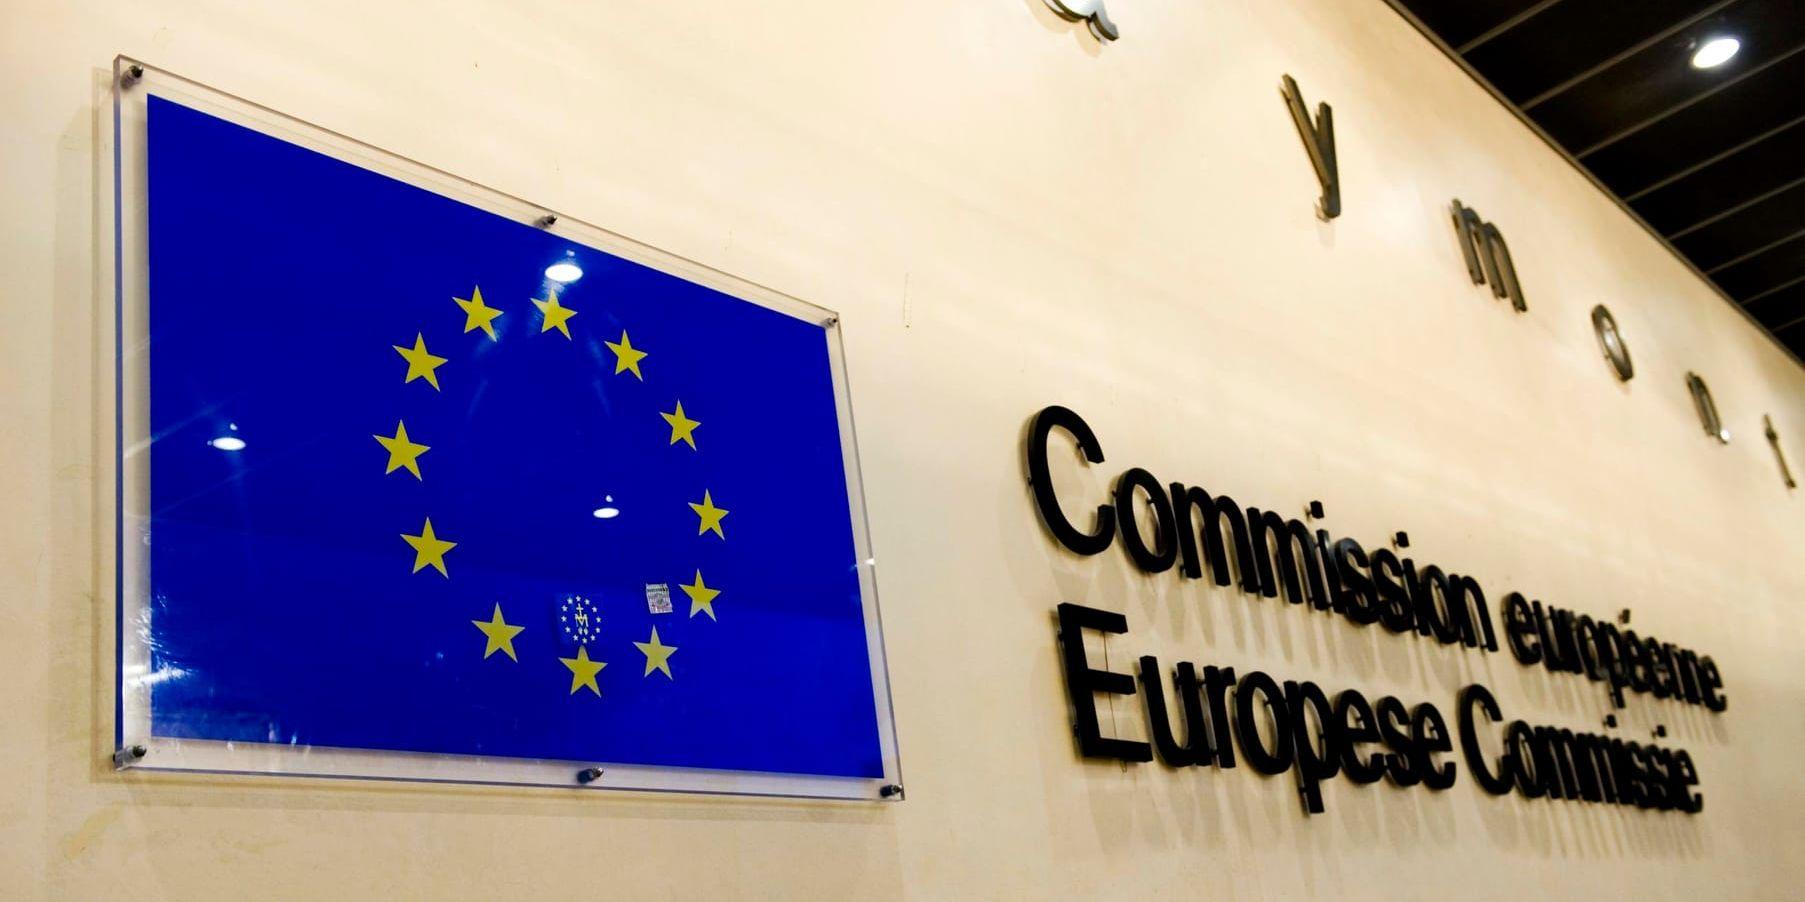 EU-kommissionens byggnad Berlaymont i Bryssel. Arkivbild.